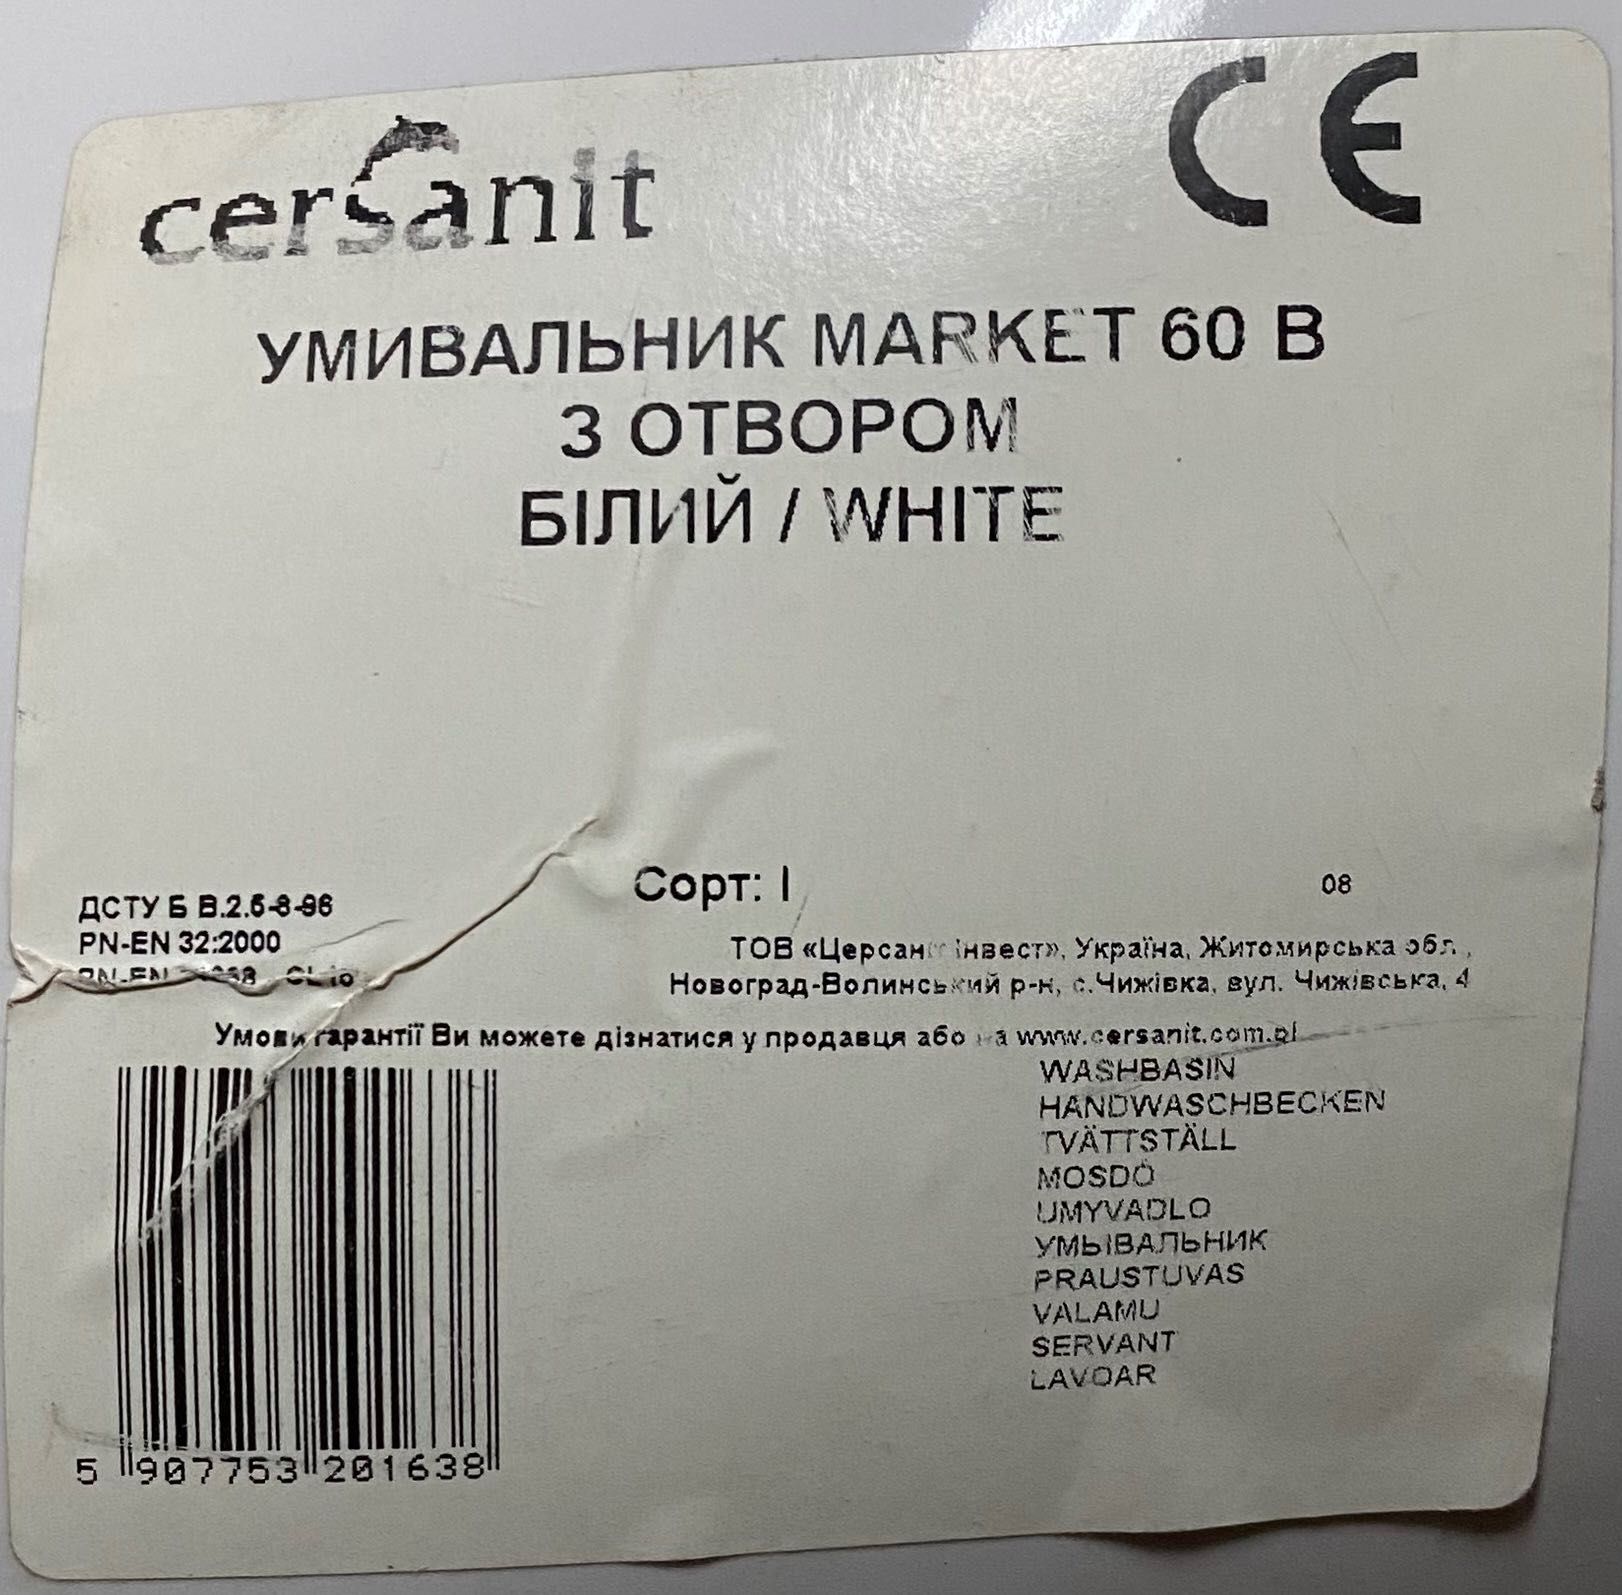 Умывальник Cersanit Market 60B white